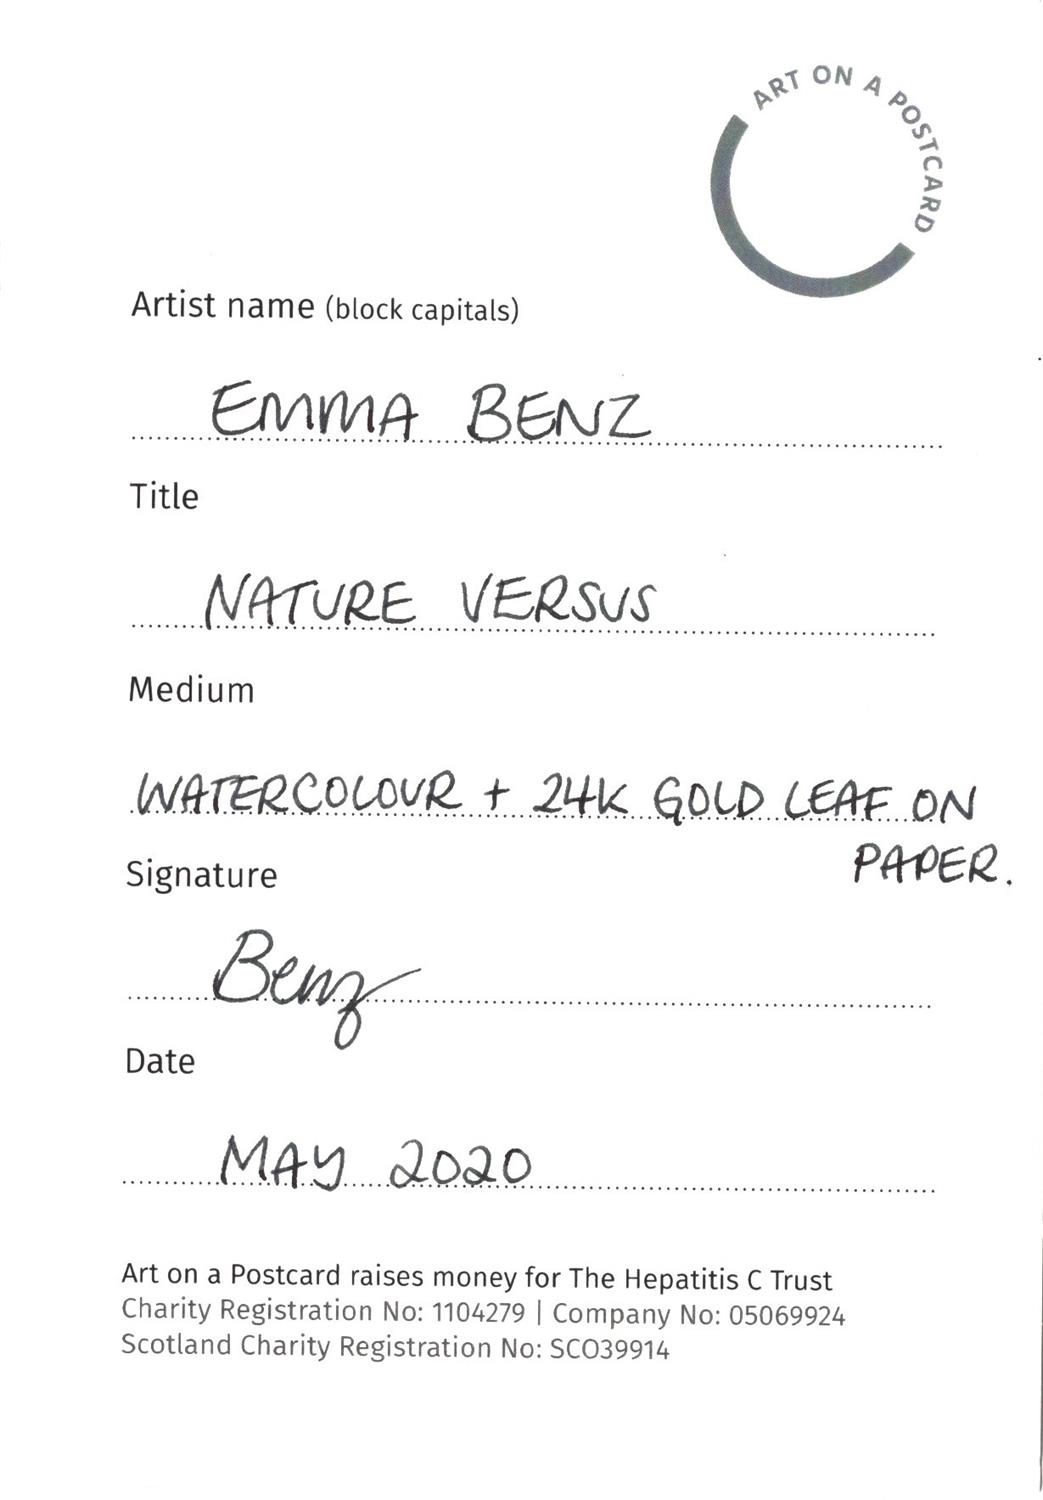 Emma Benz, Nature Versus, 2020 - Image 3 of 3